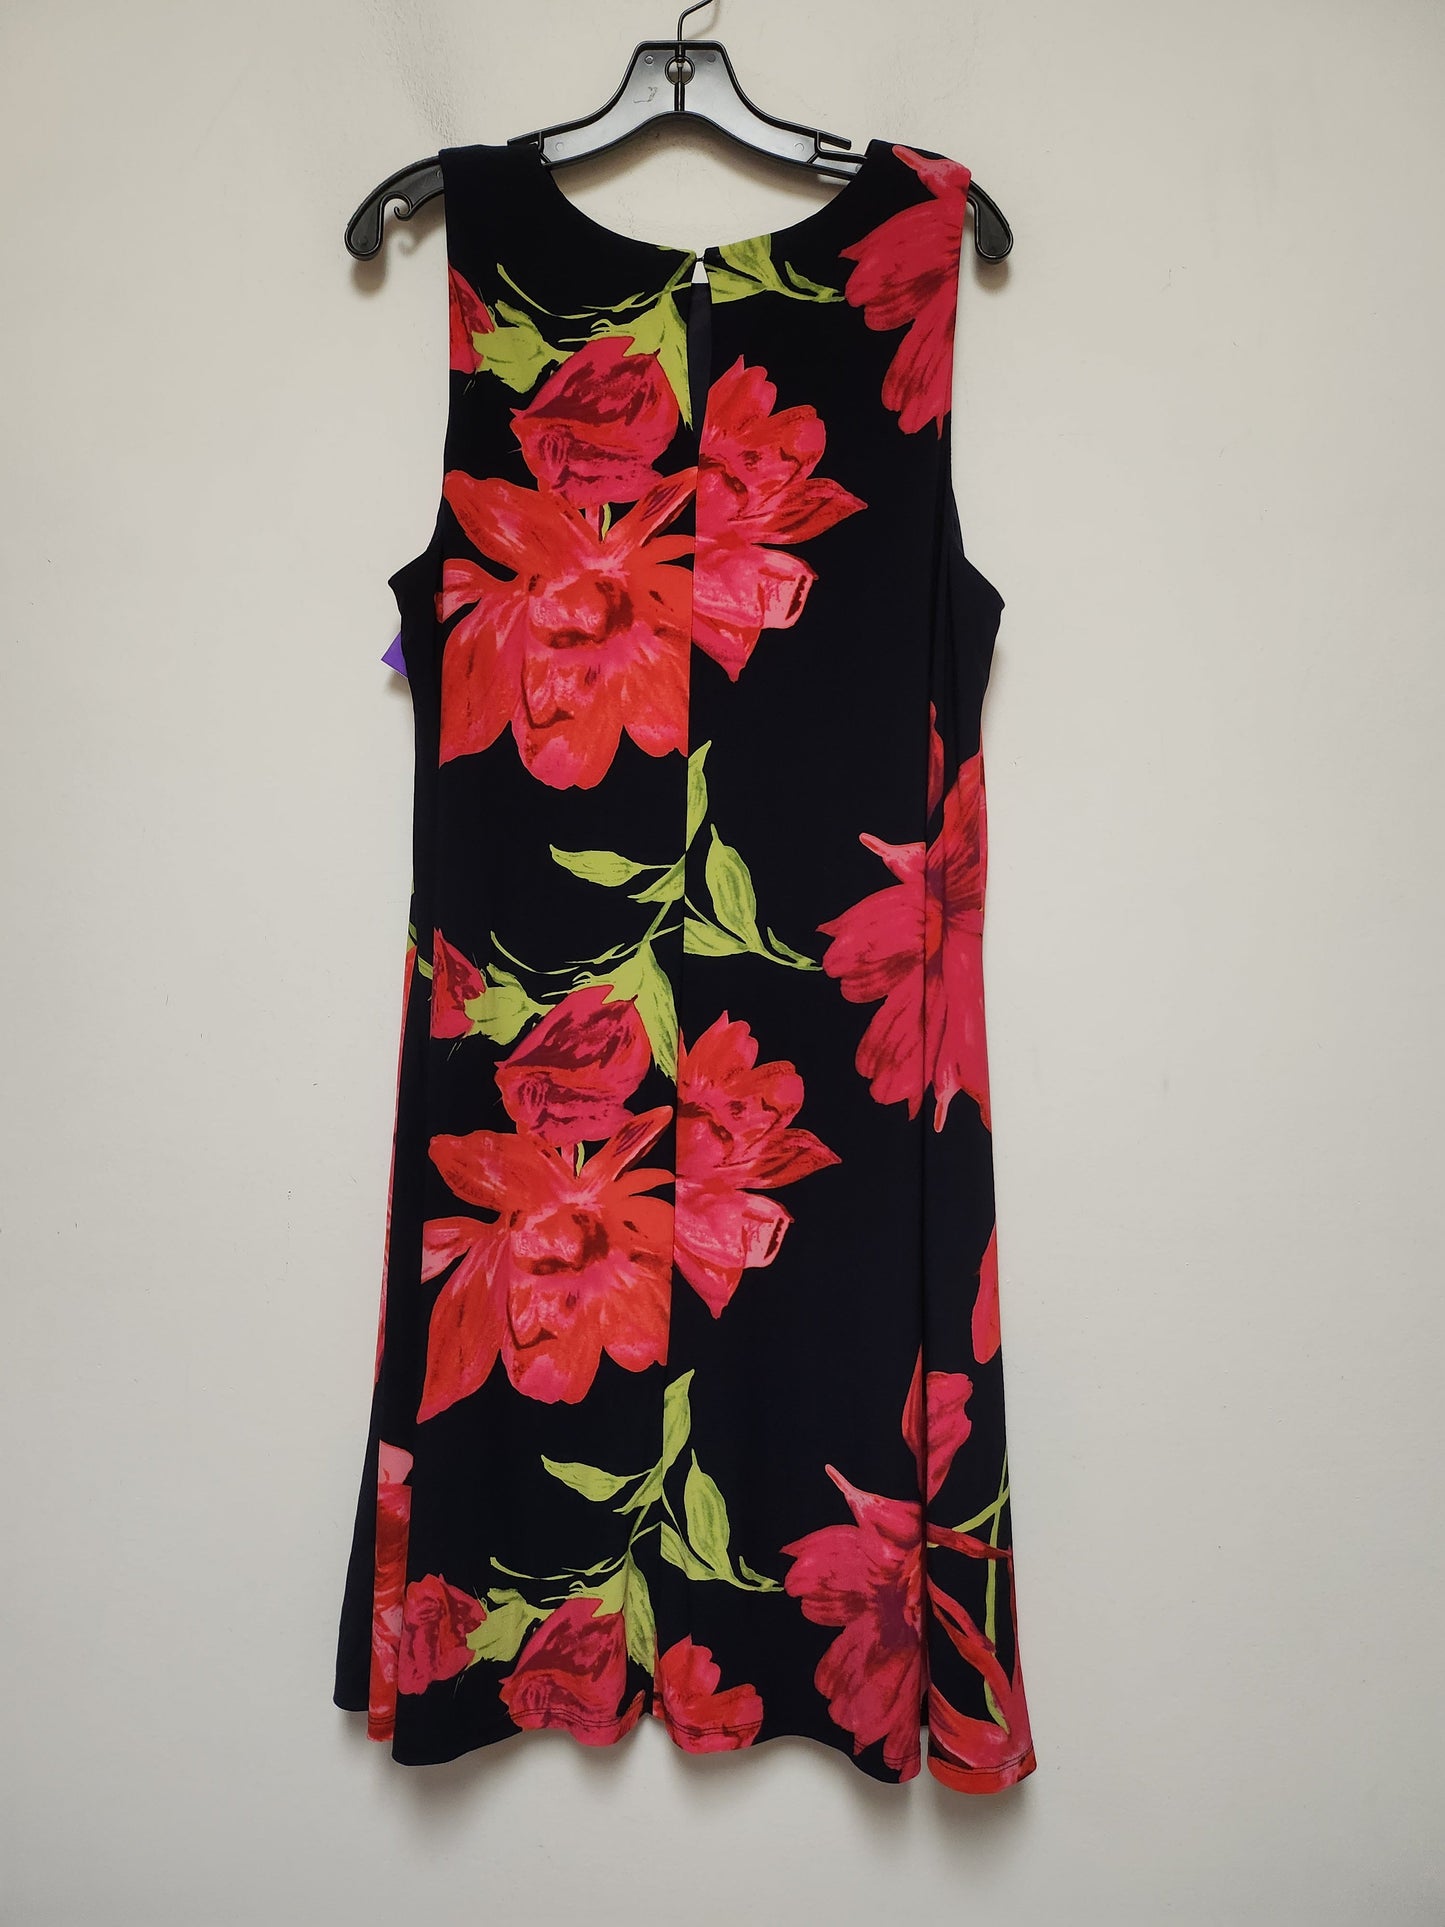 Floral Print Dress Casual Midi Anne Klein, Size Xl